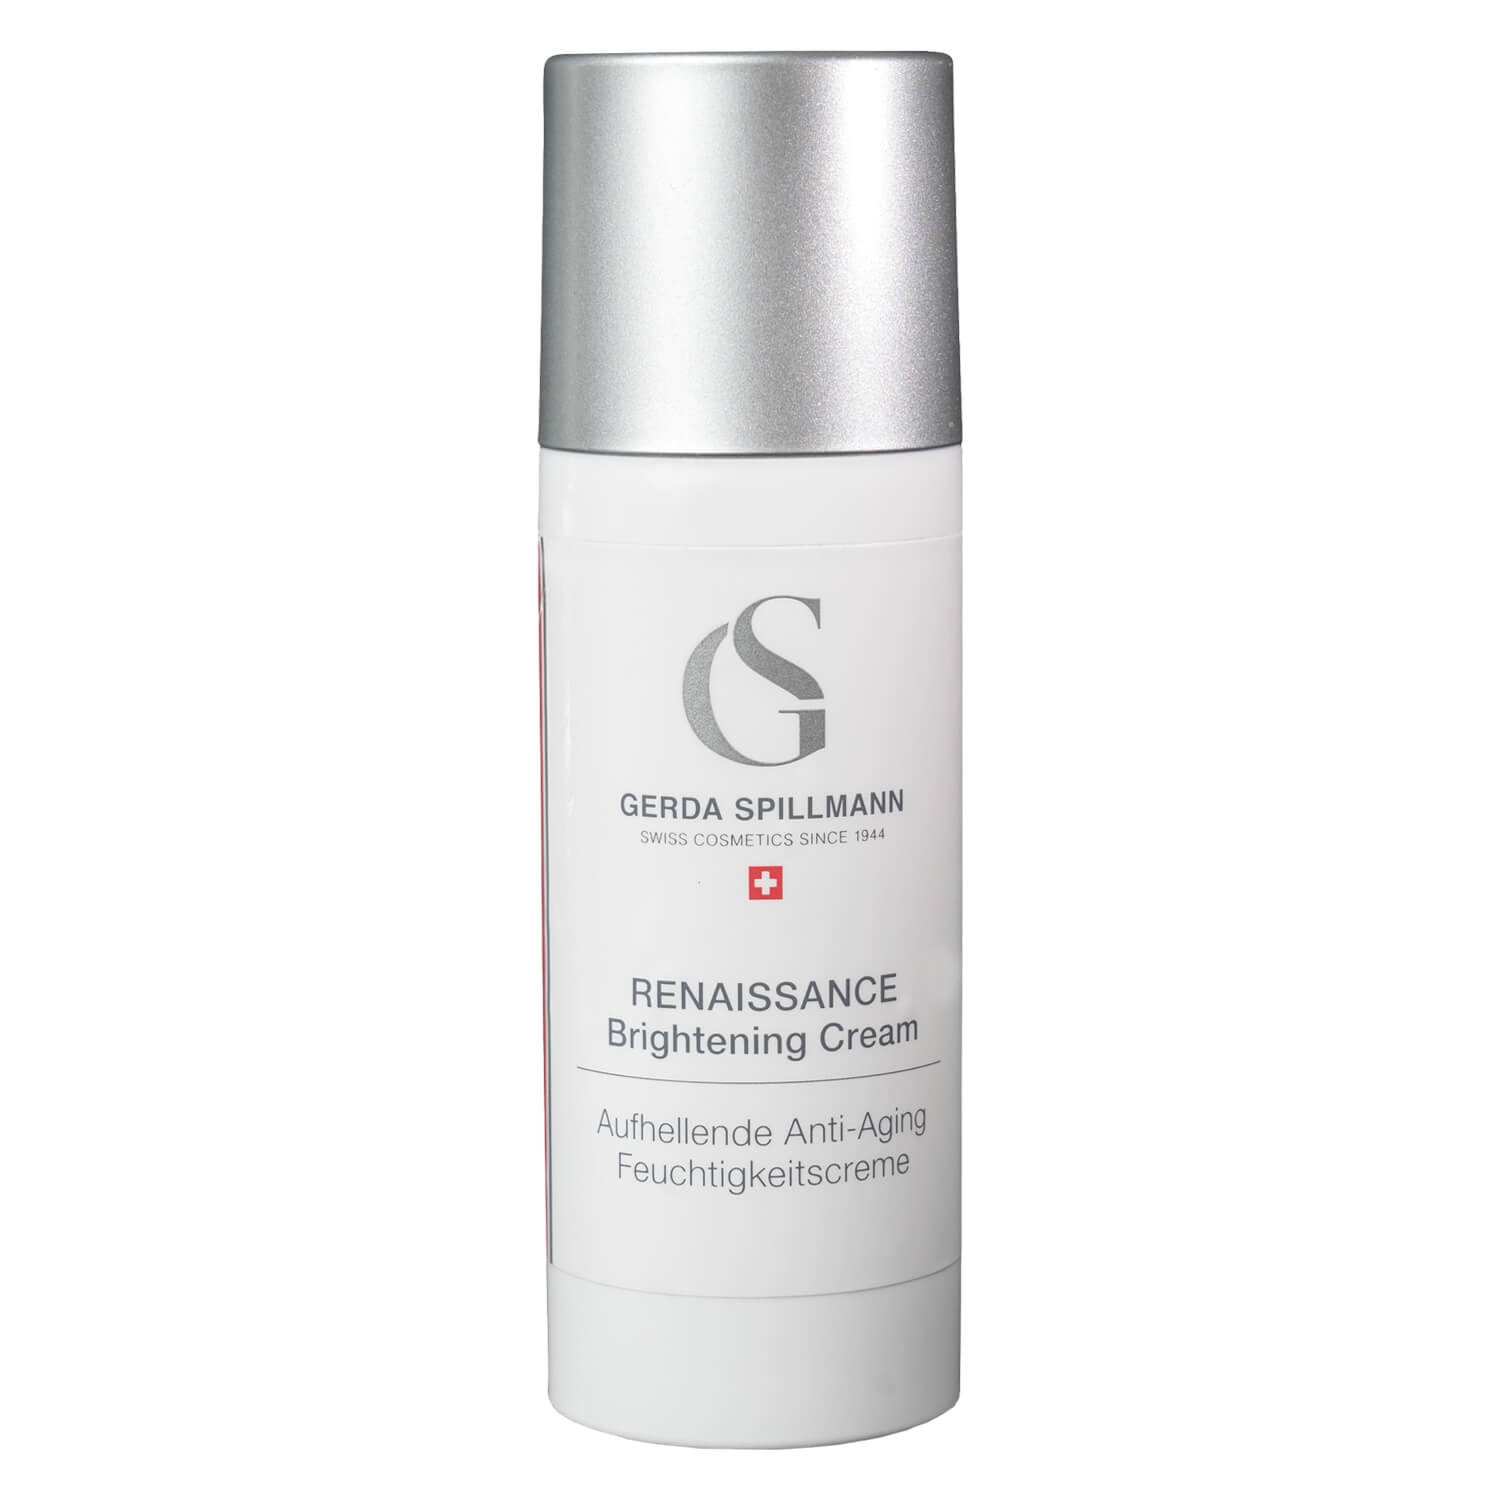 Produktbild von GS Skincare - Renaissance Brightening Cream